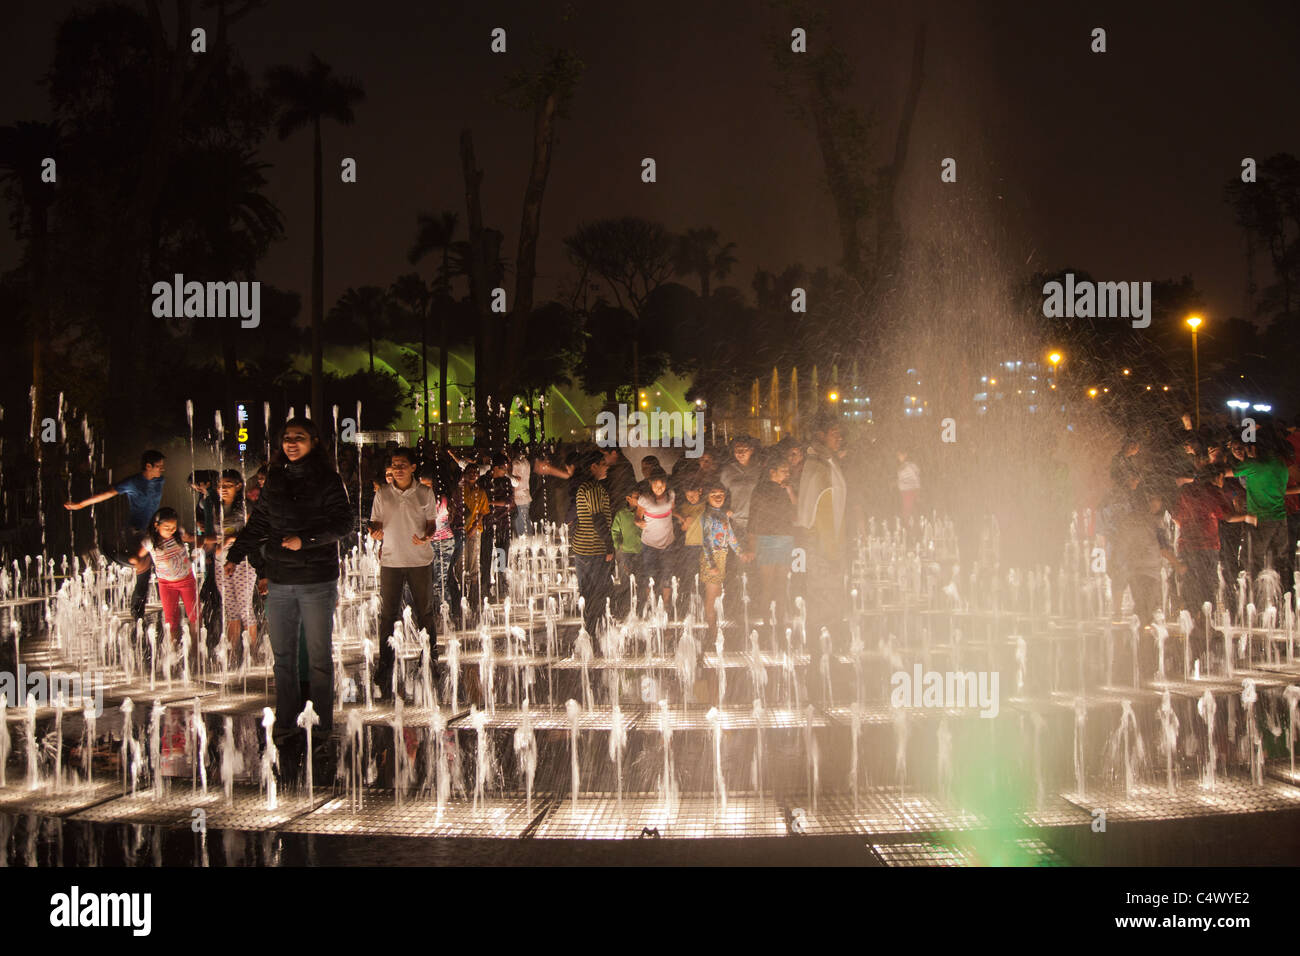 The fountains and light show at Parque de la Reserva, Lima, Peru Stock ...